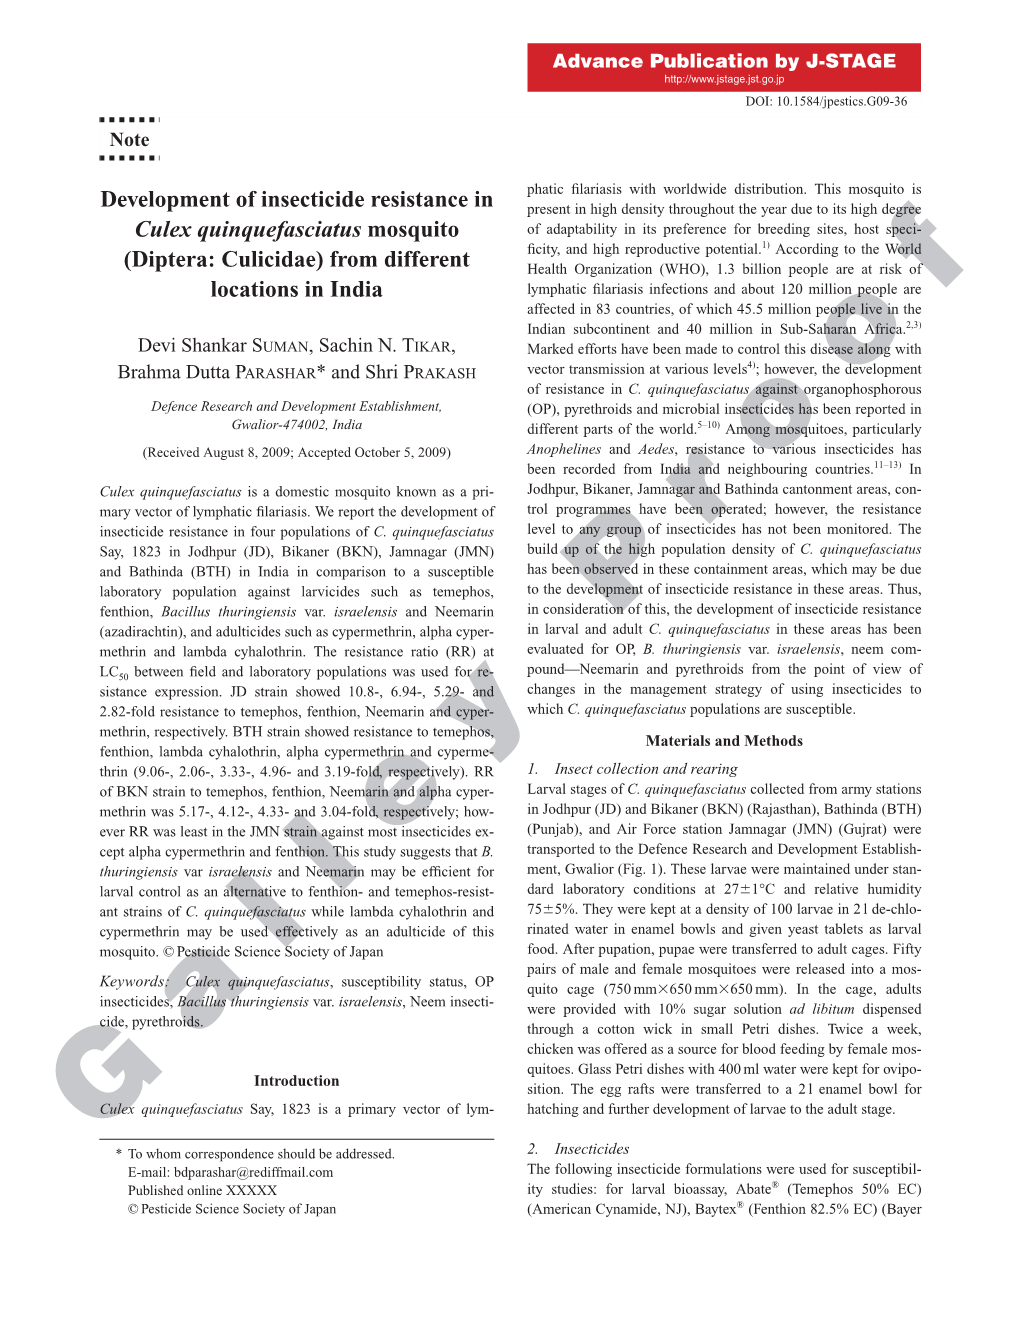 Development of Insecticide Resistance in Culex Quinquefasciatus Mosquito (Diptera: Culicidae) in India 3